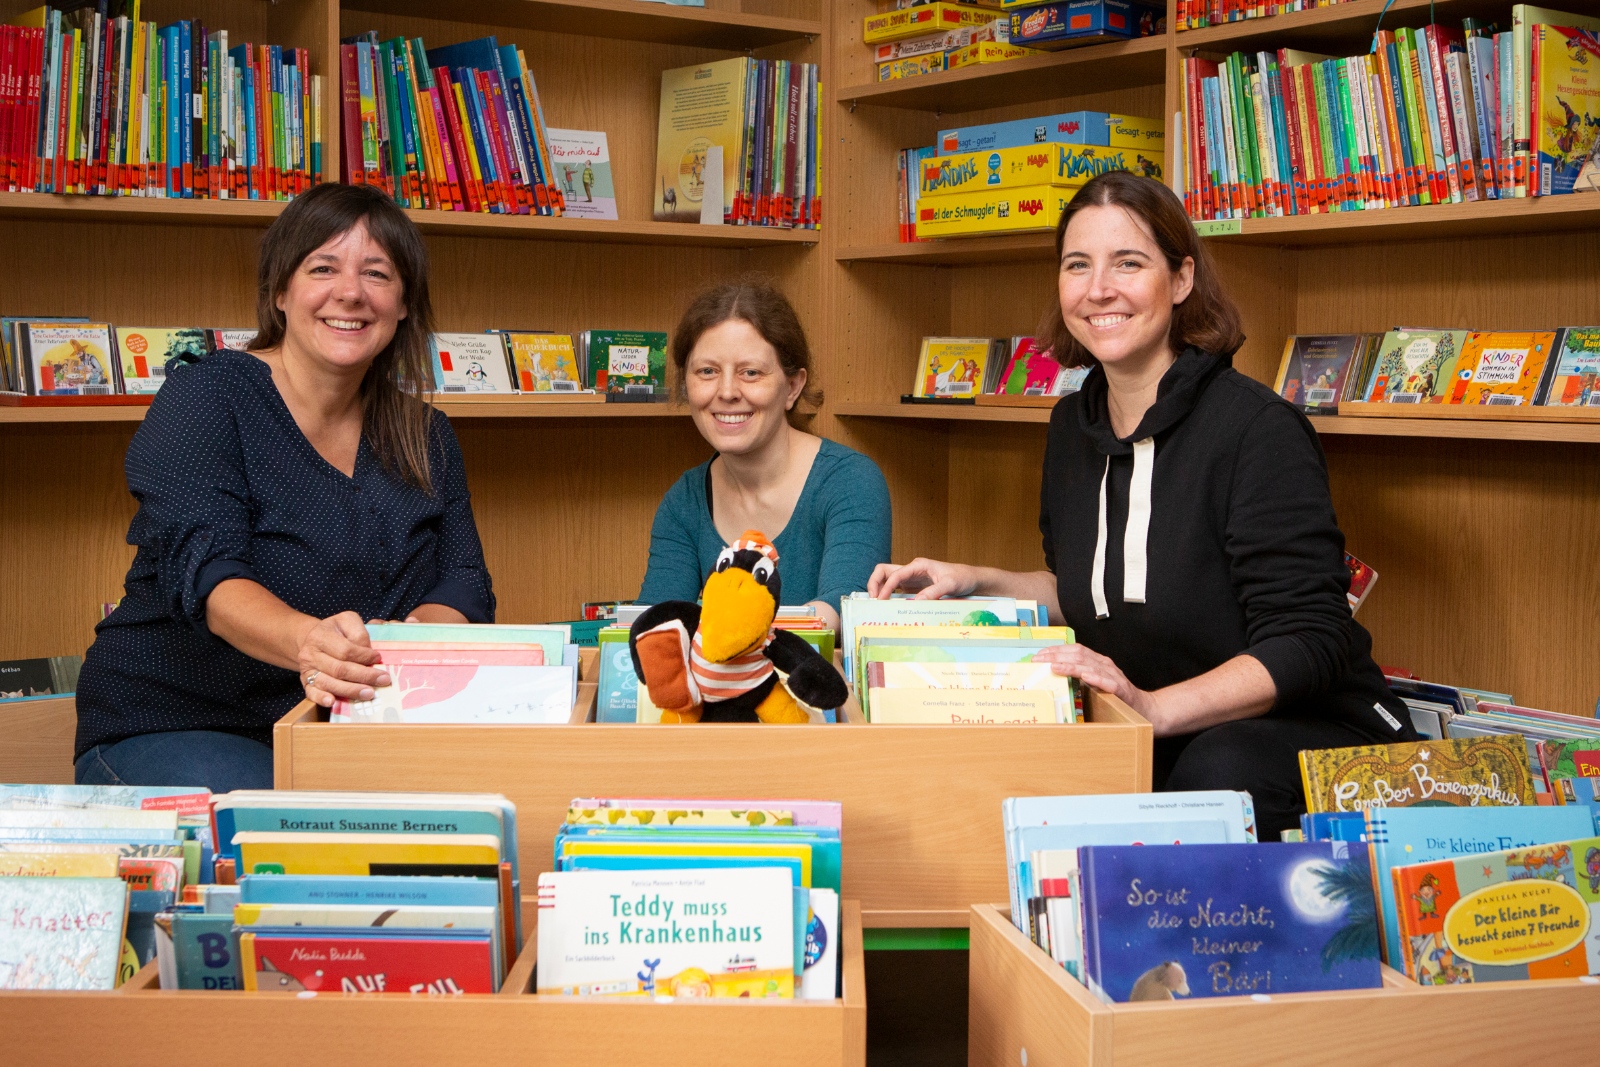 Liane Schäfer, Annette Gräf und Anja Bongartz (v.l.n.r.) werden die Kinderbibliothek zusammen leiten.